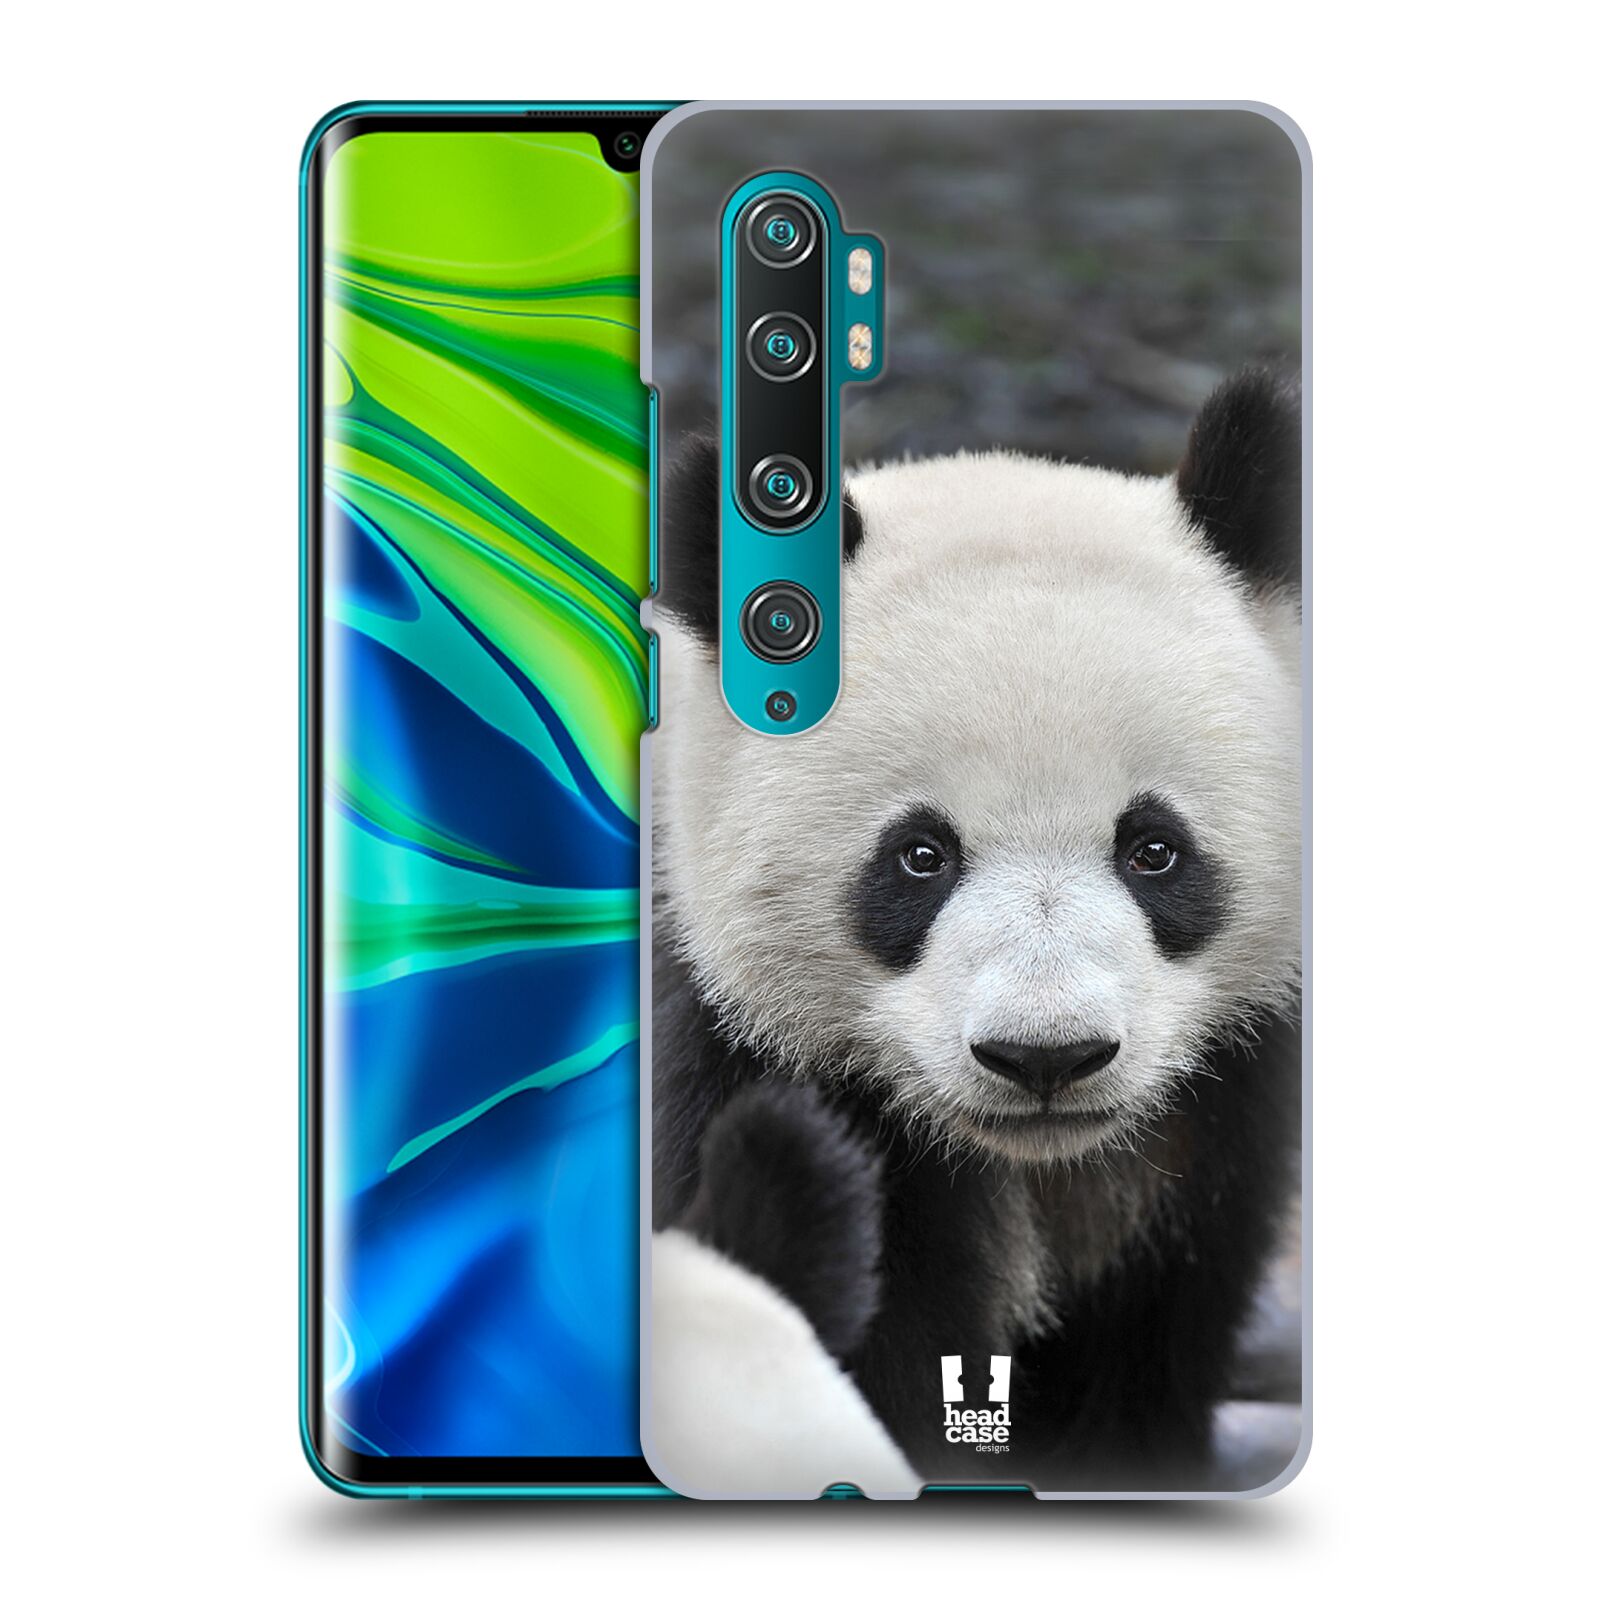 Zadní obal pro mobil Xiaomi Mi Note 10 / Mi Note 10 PRO - HEAD CASE - Svět zvířat medvěd panda